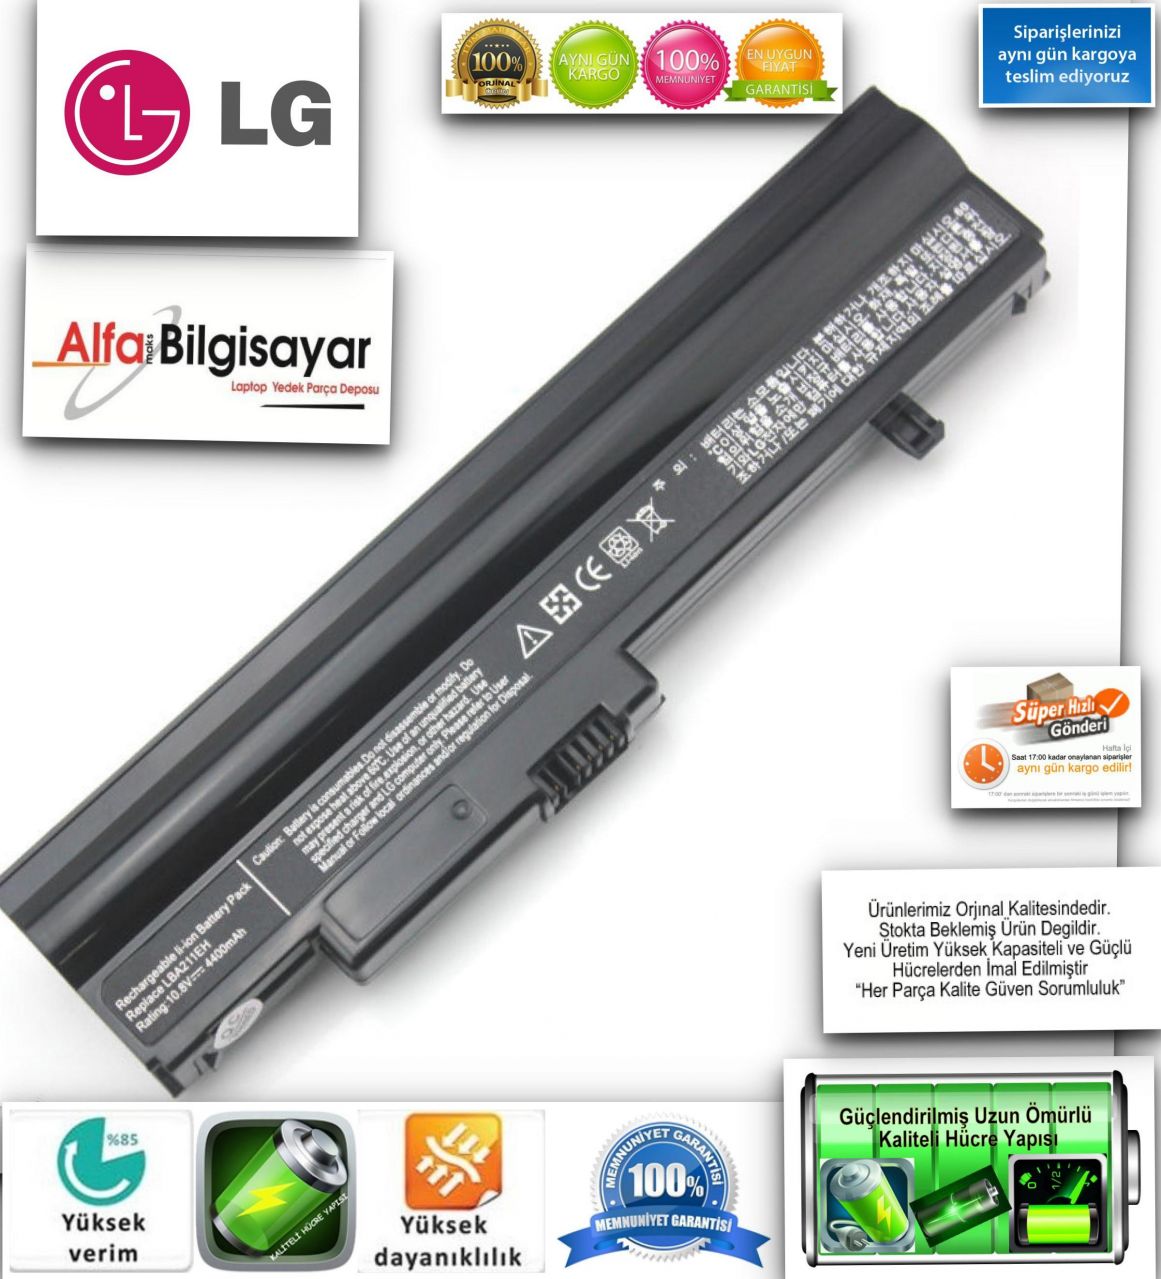 LG Siyah X120 LG X130 LG X13 LB3211EE LBA211EH LB6411EH LB3511EE BATARYA Pil